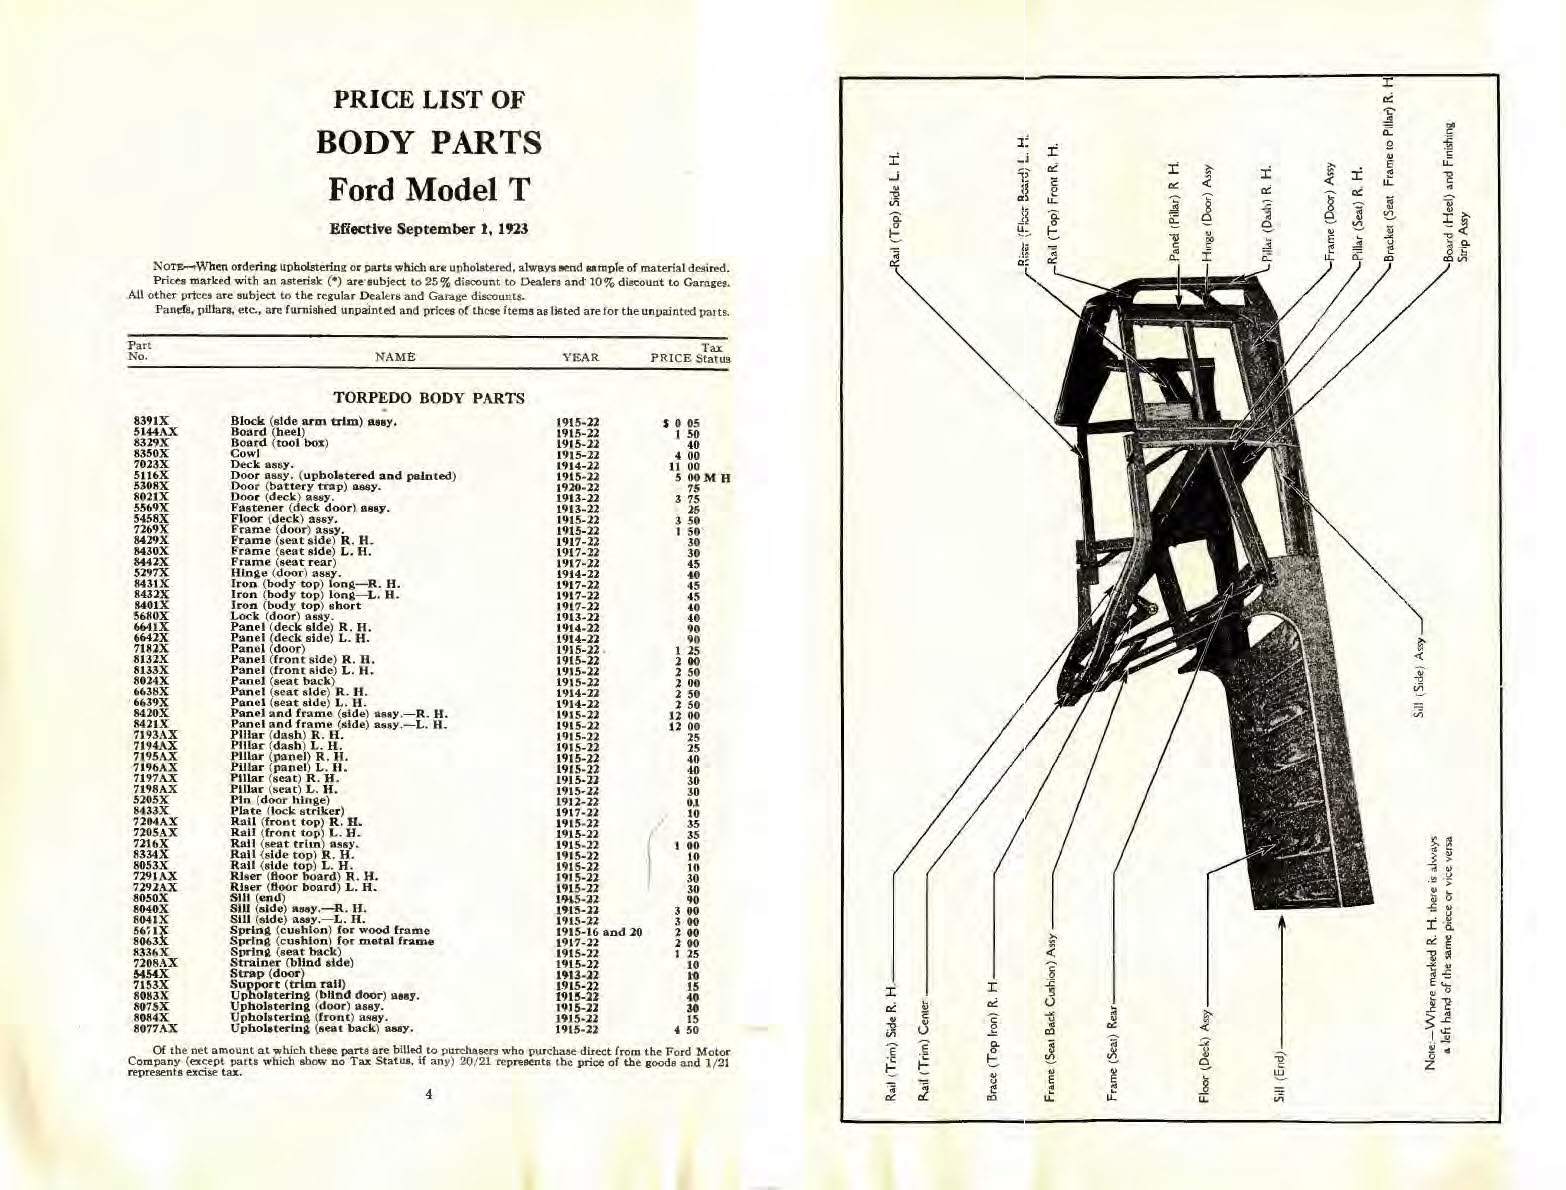 n_1923 Ford Body Parts List-04-05.jpg